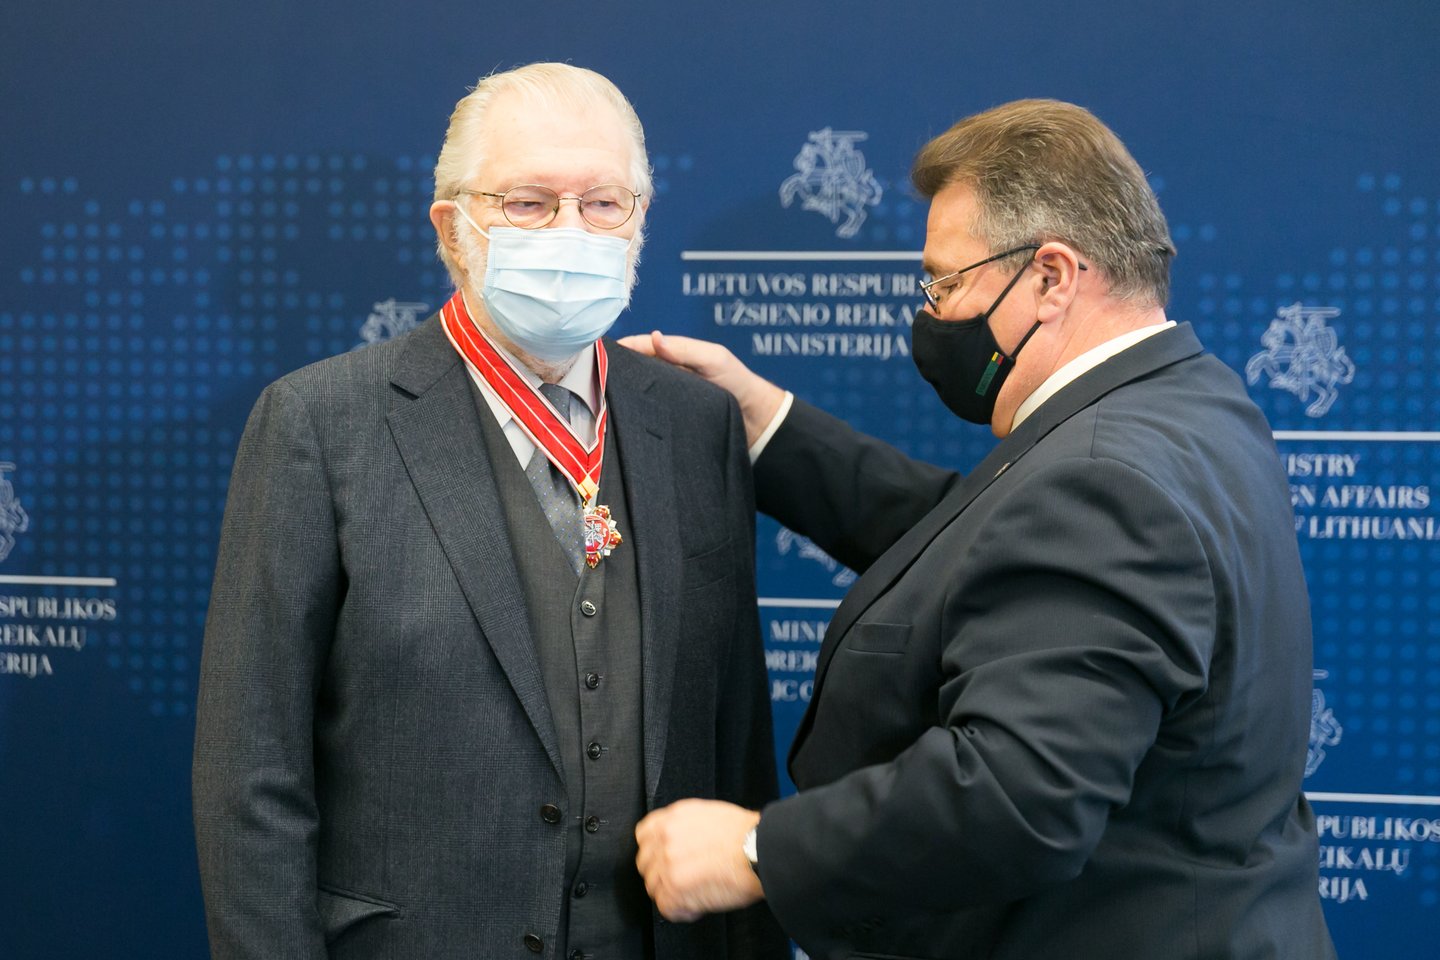 Užsienio reikalų ministerijoje (URM) Vilniuje aktoriui Juozui Budraičiui įteiktas šios ministerijos garbės ženklas „Lietuvos diplomatijos žvaigždė“.<br> T.Bauro nuotr.